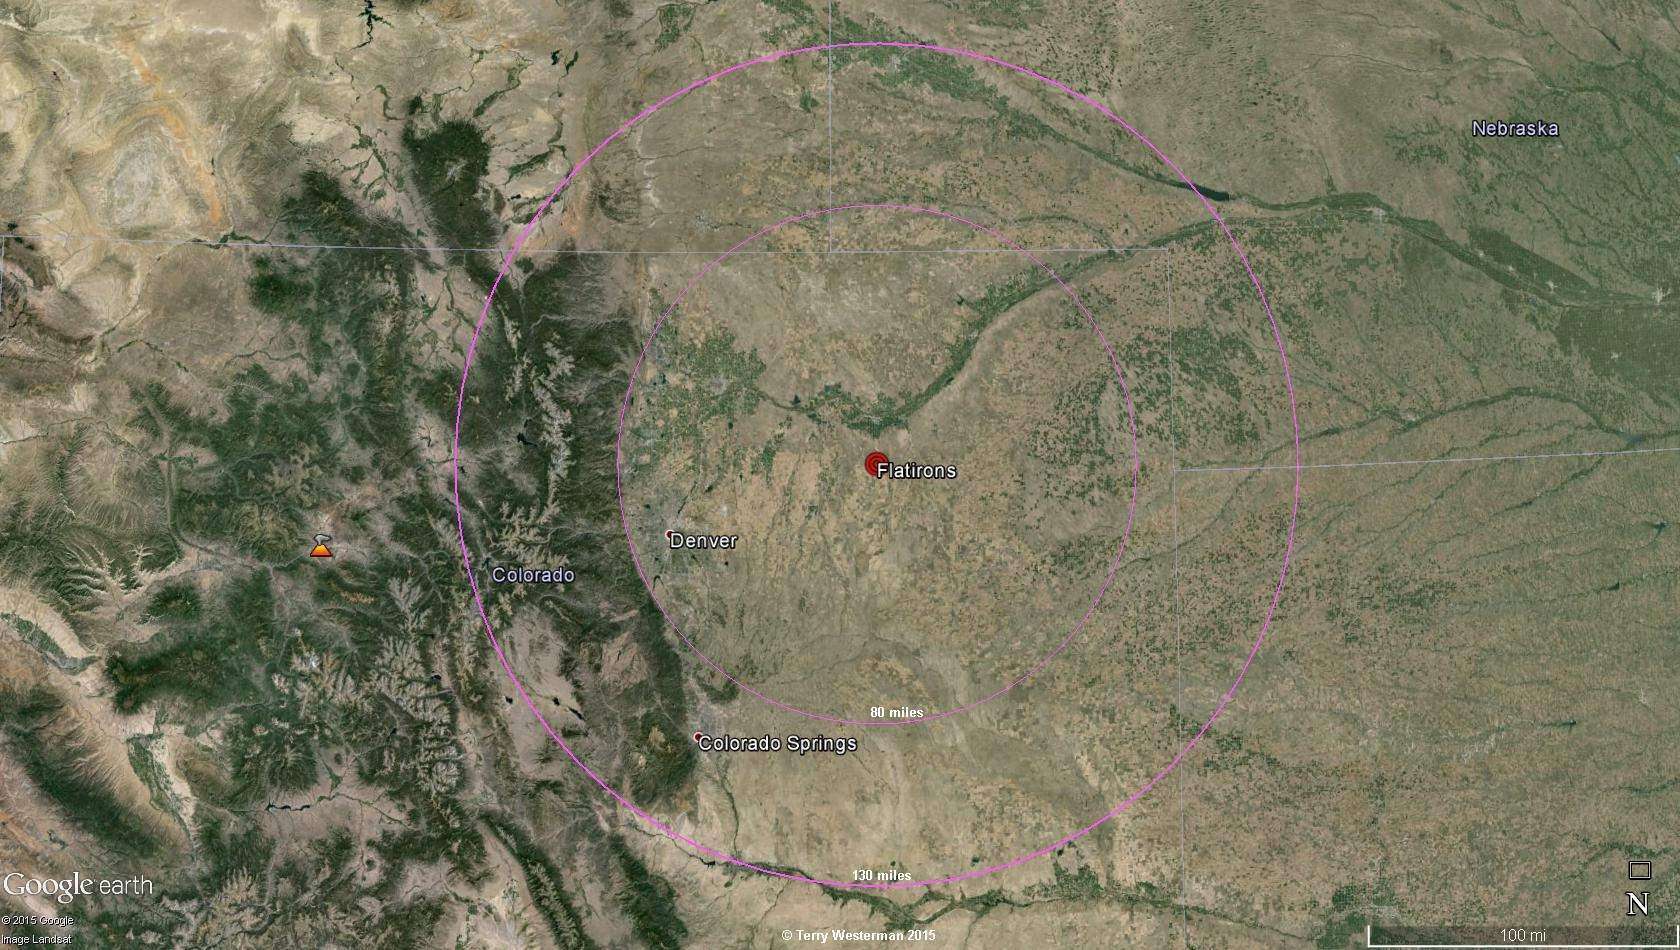 The Flatirons Meteor Impact seismic circle at 130 miles radius.